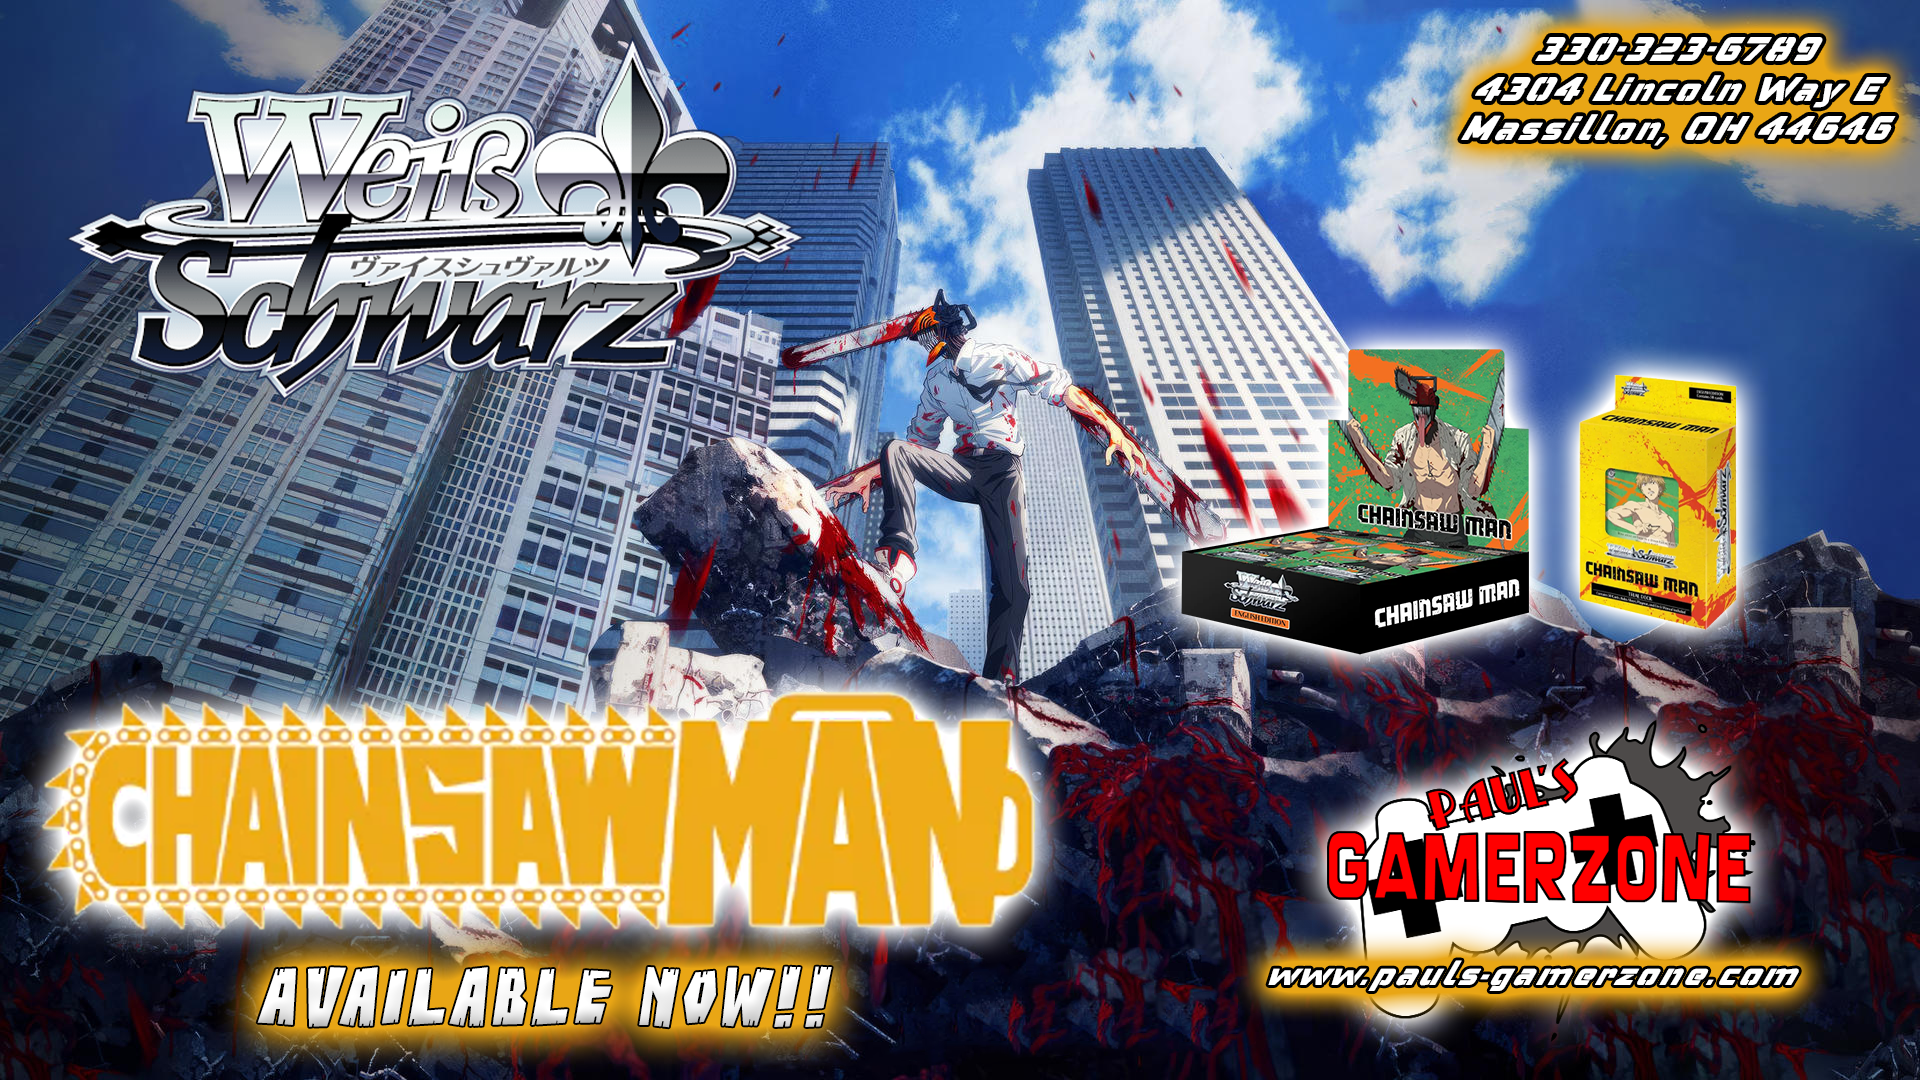 Weiss Schwarz Chainsawman!